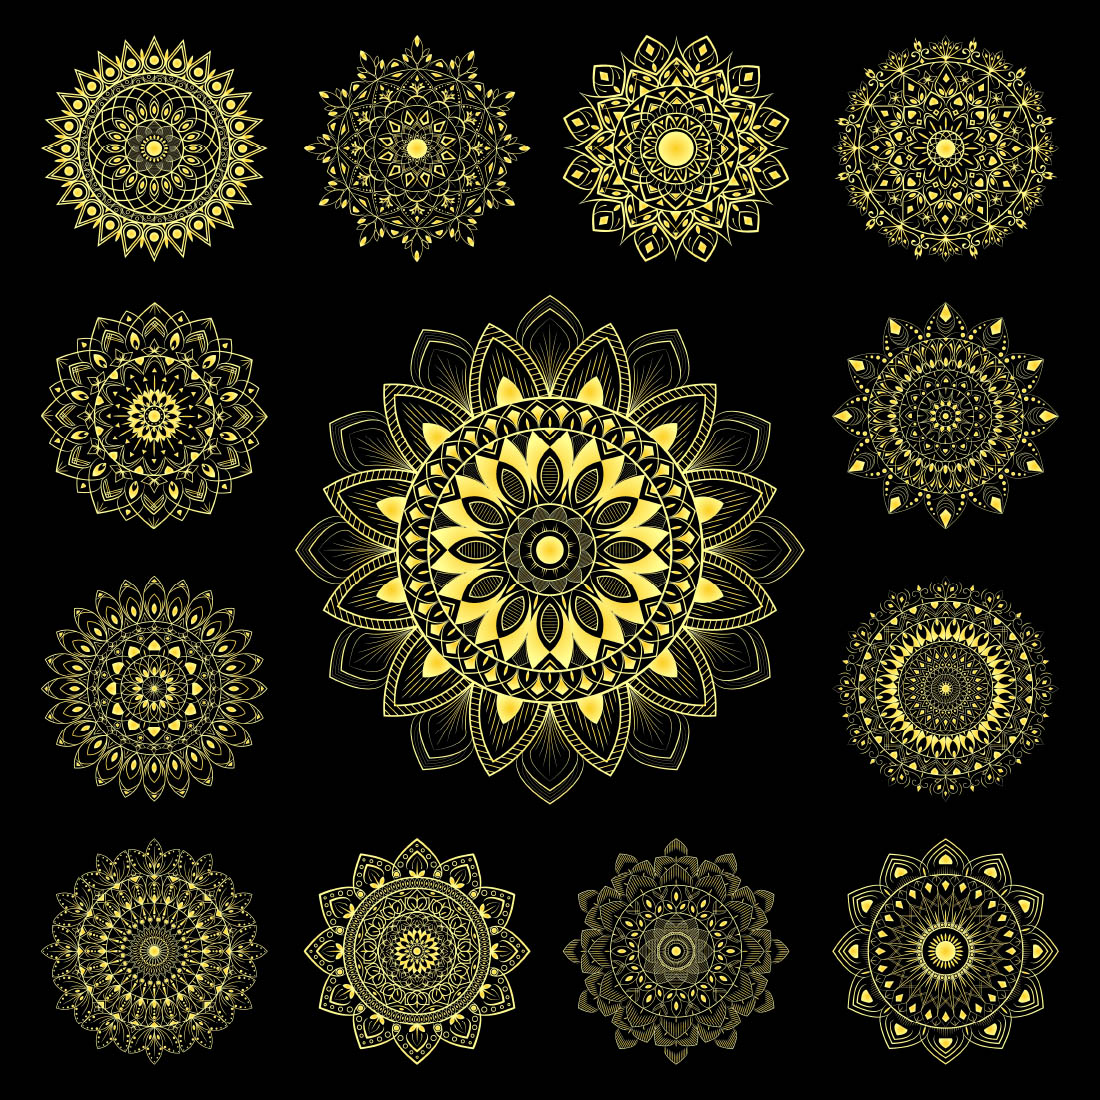 13 Luxury Mandala Bundle Golden Mandala Design with Black Background cover image.